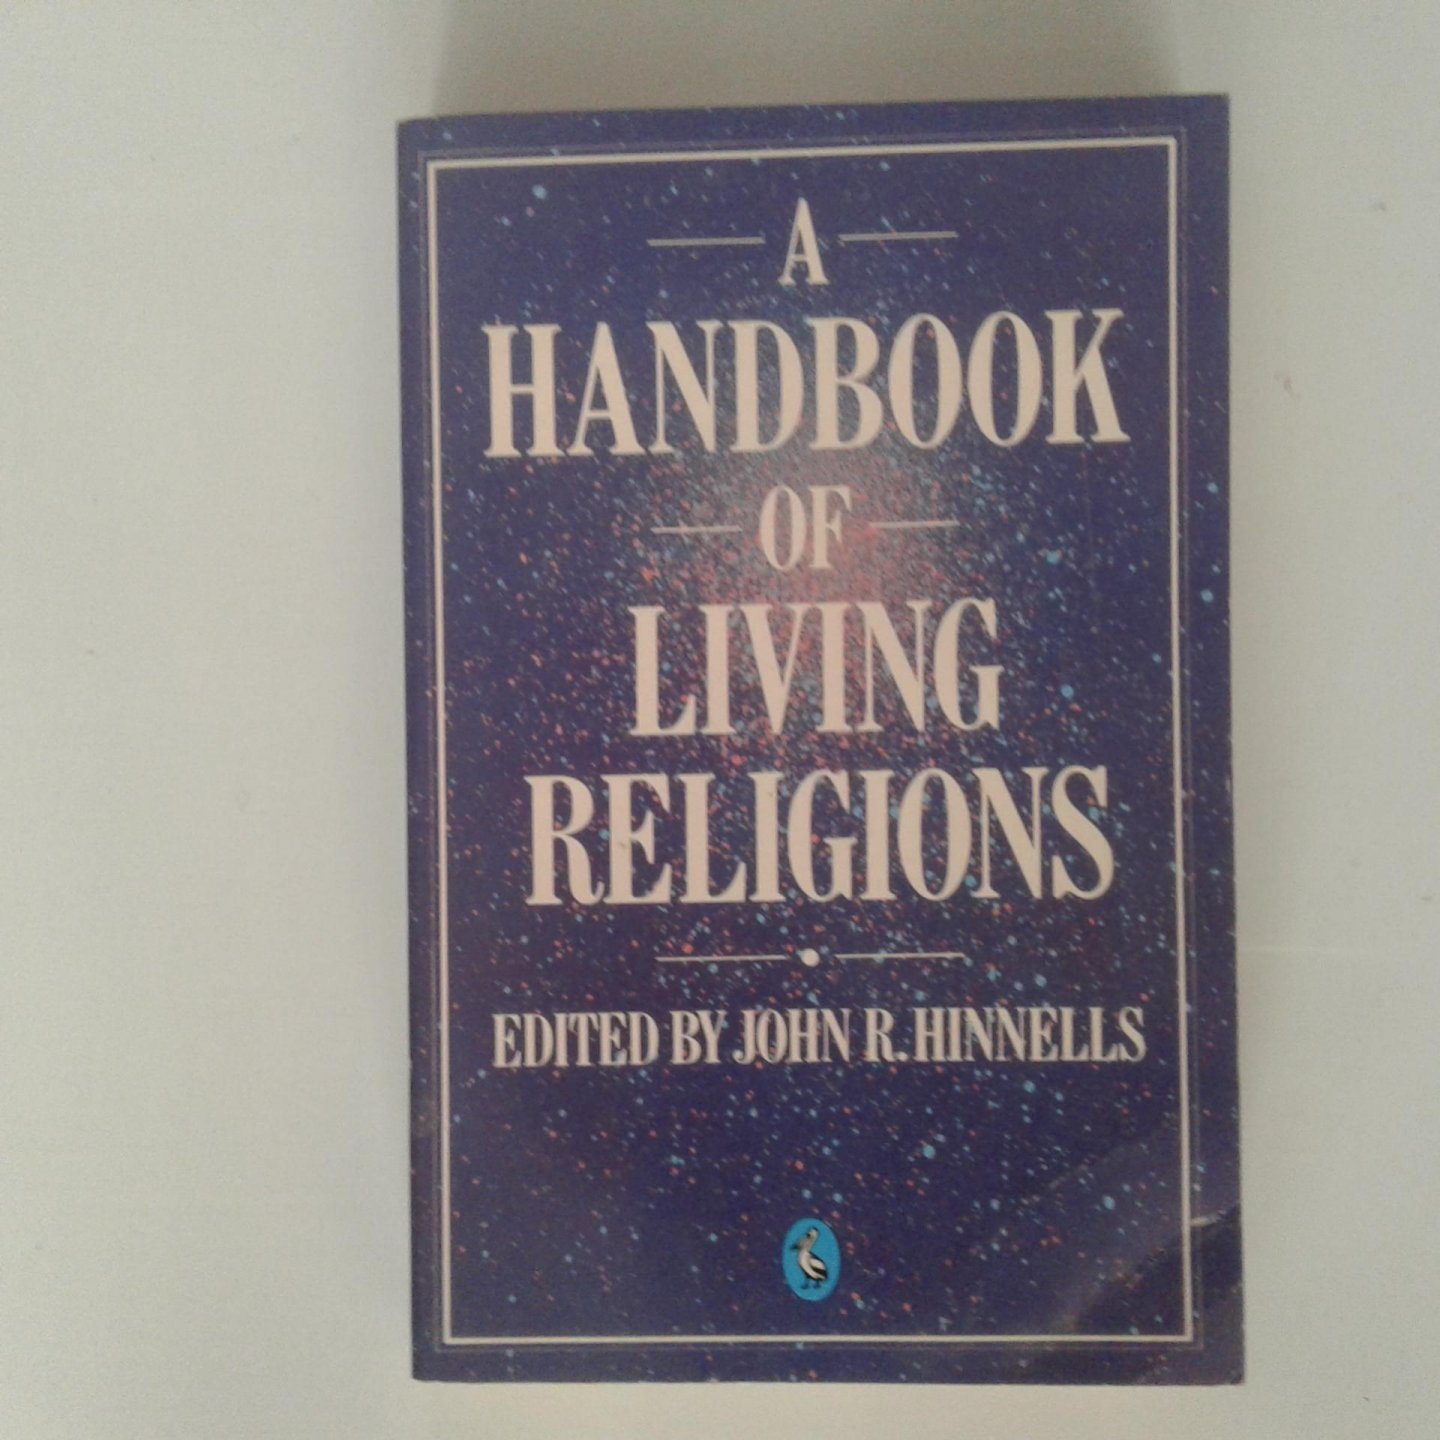 Hinnells, John R. - A Handbook of Living Religions